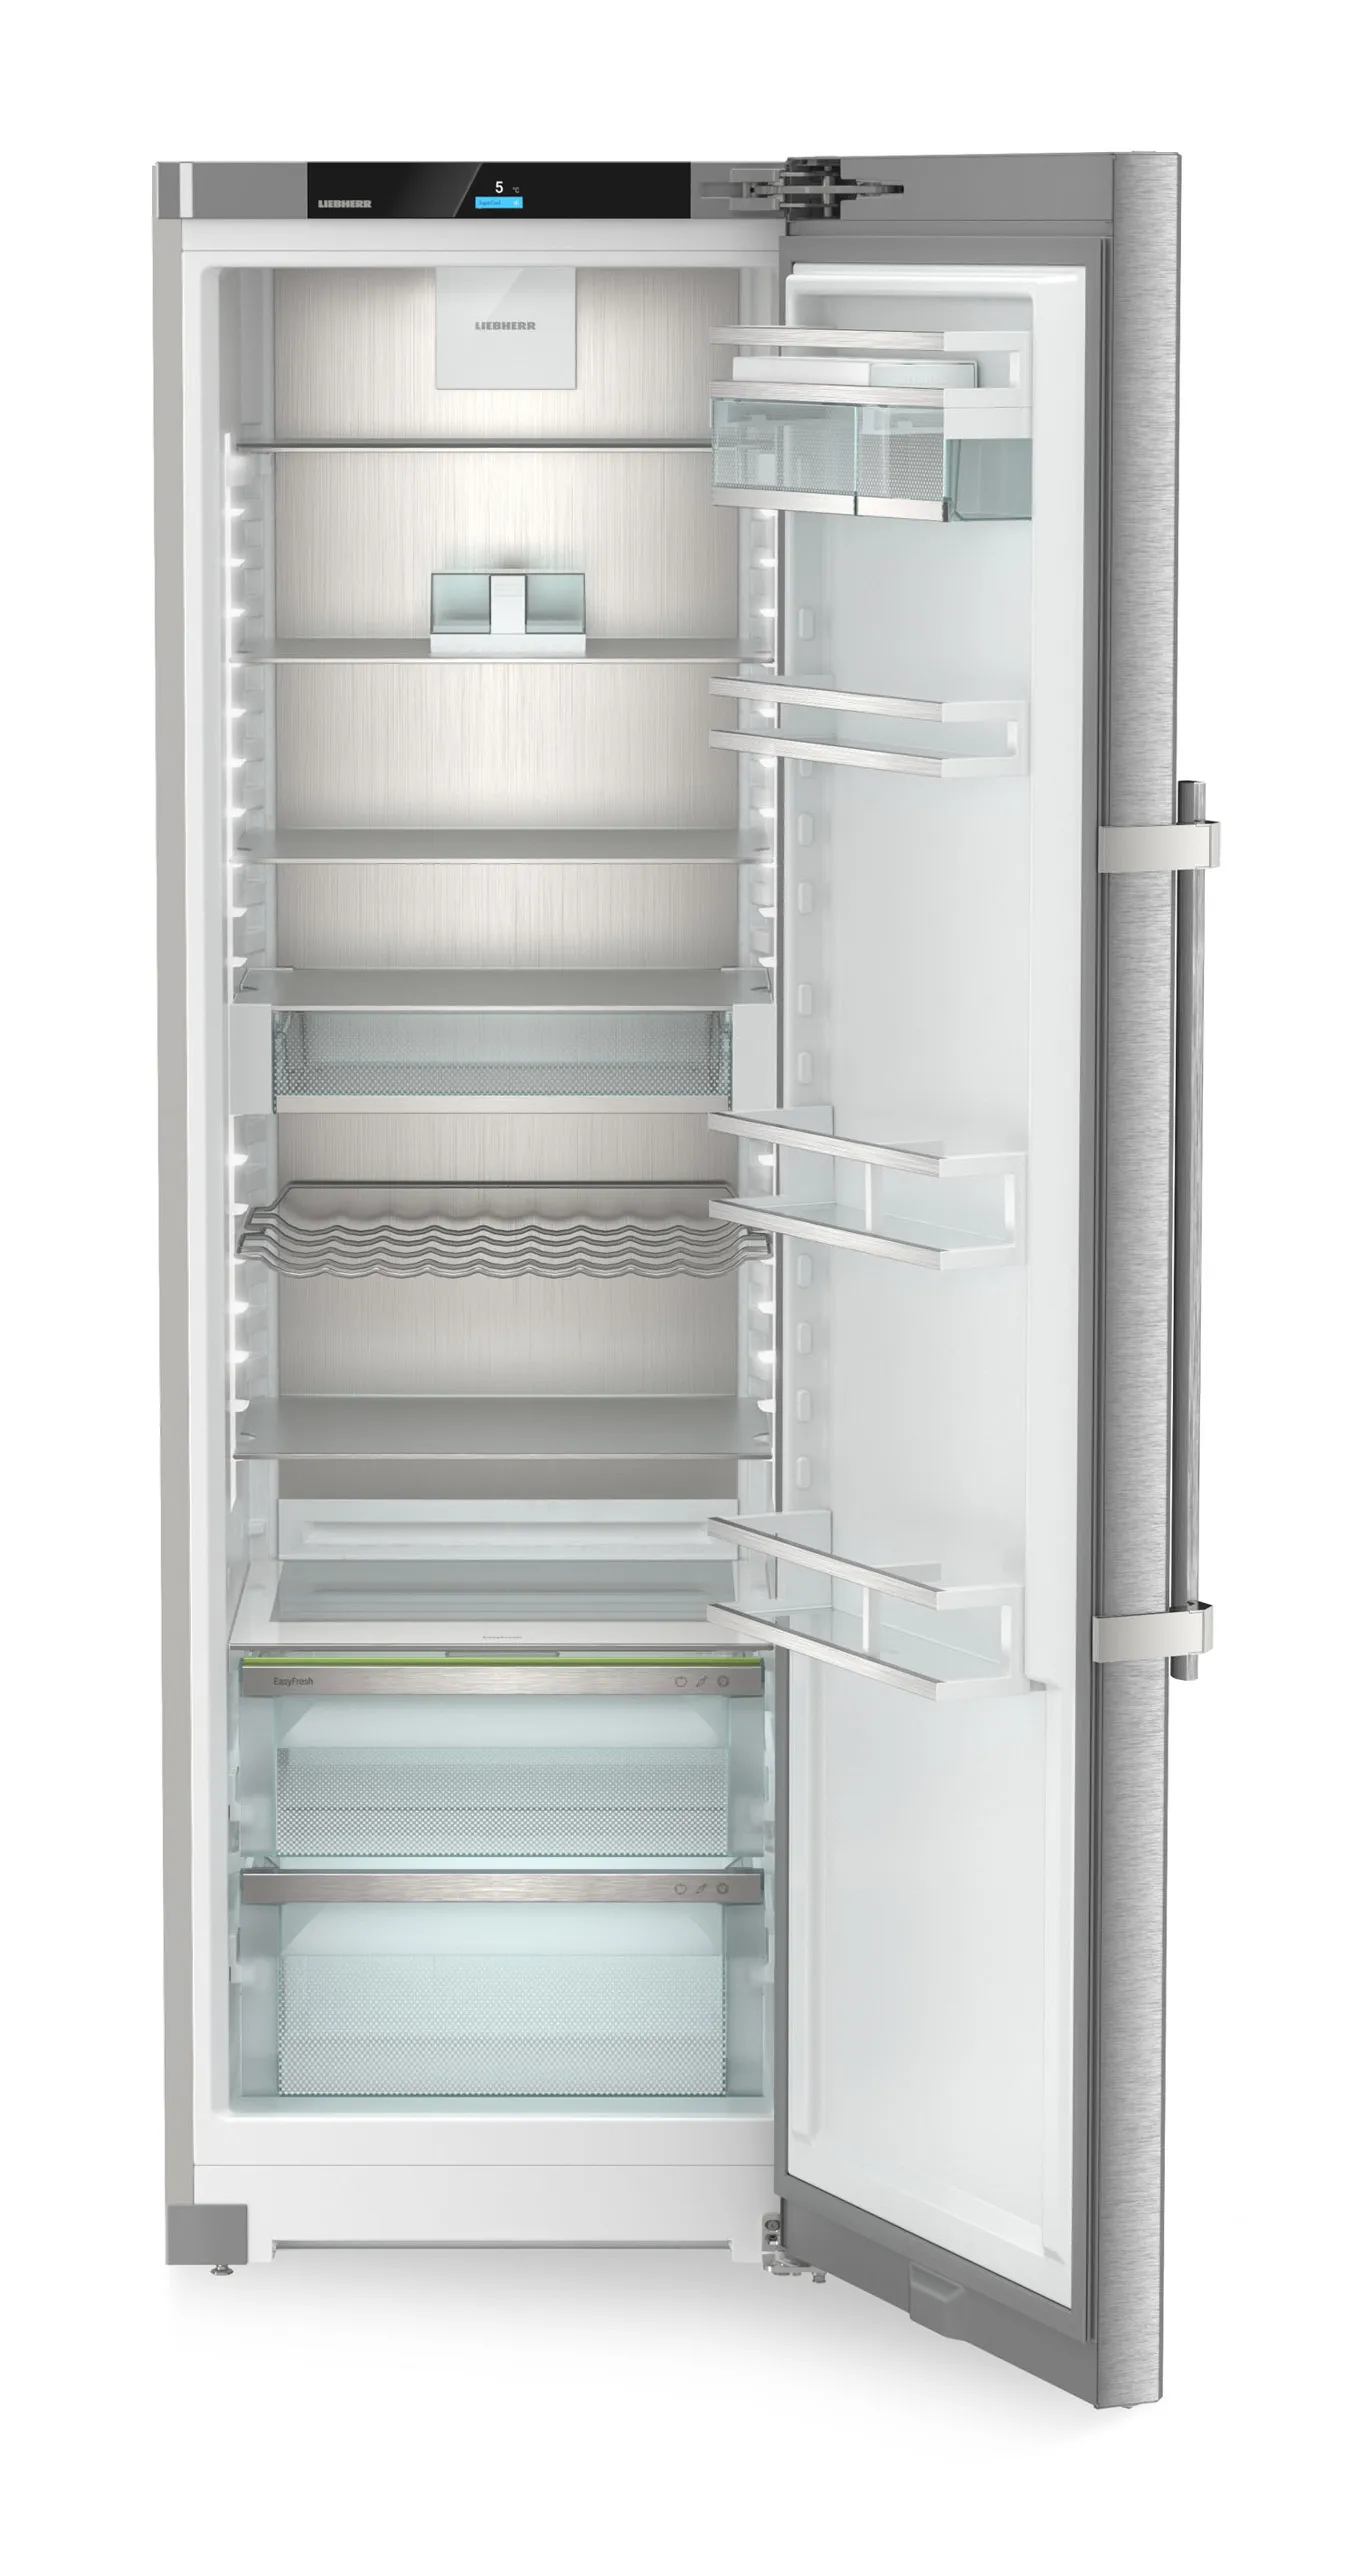 Single door refrigerator 60 cm RSDD 5250 Liebherr